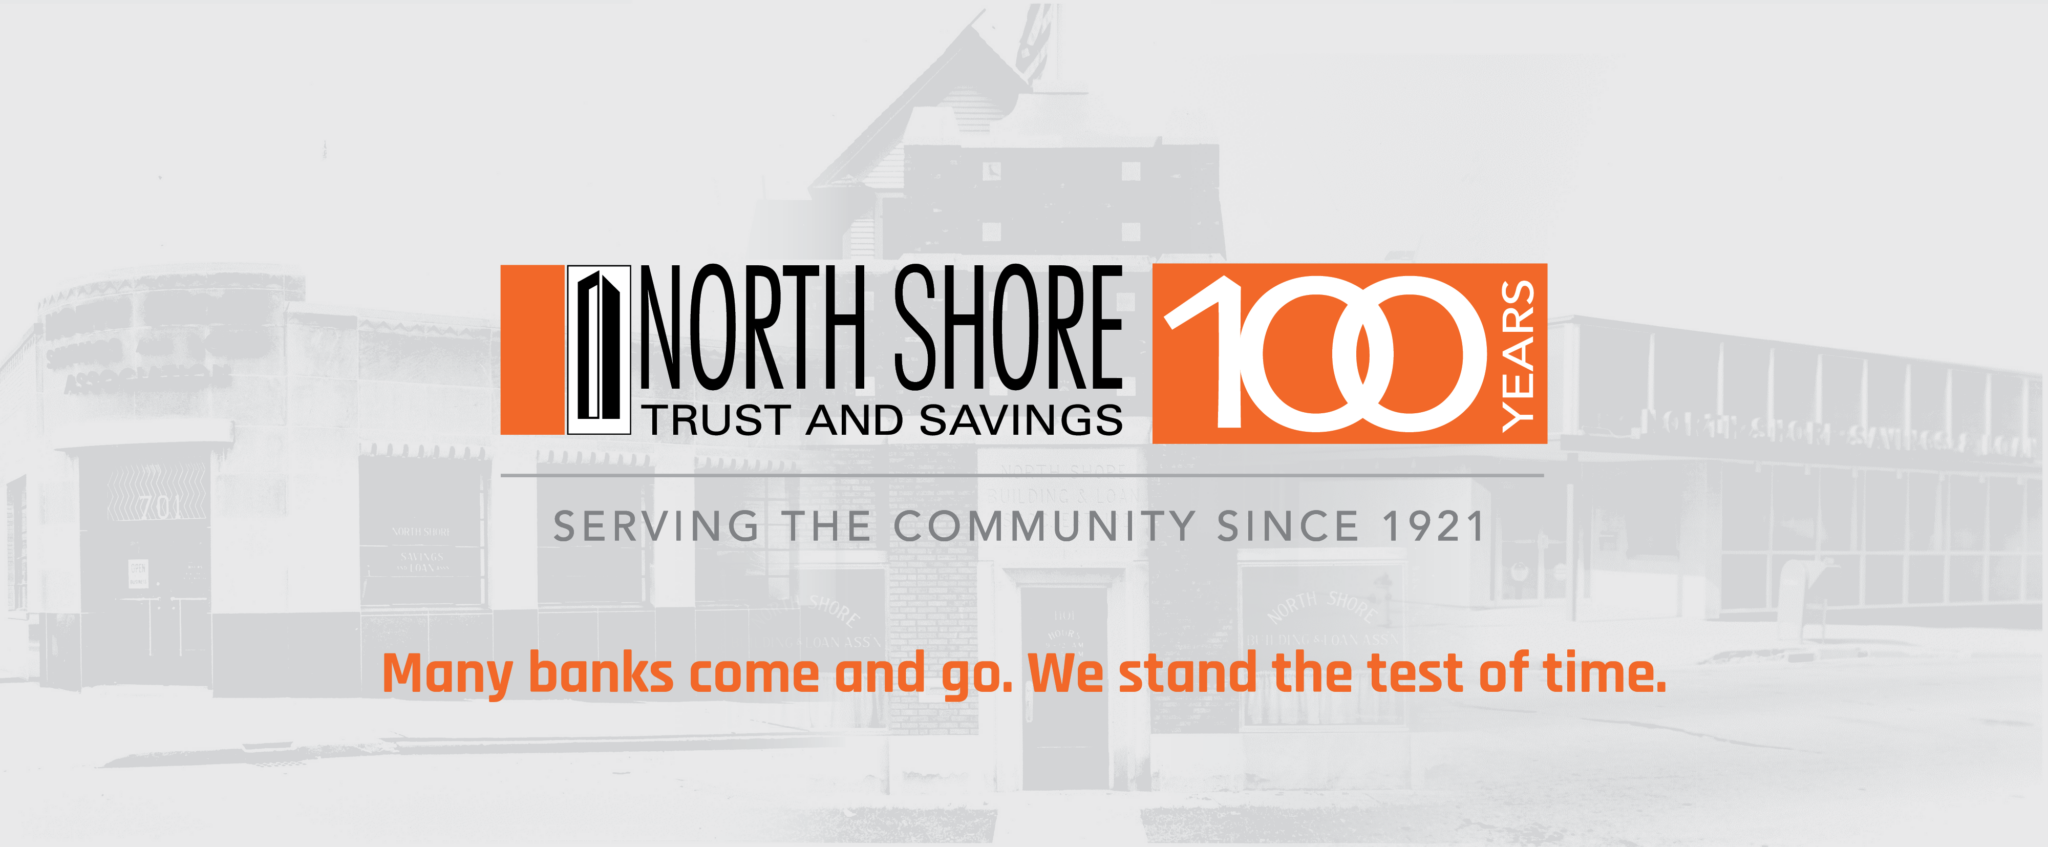 100 Years Anniversary | North Shore Trust and Savings